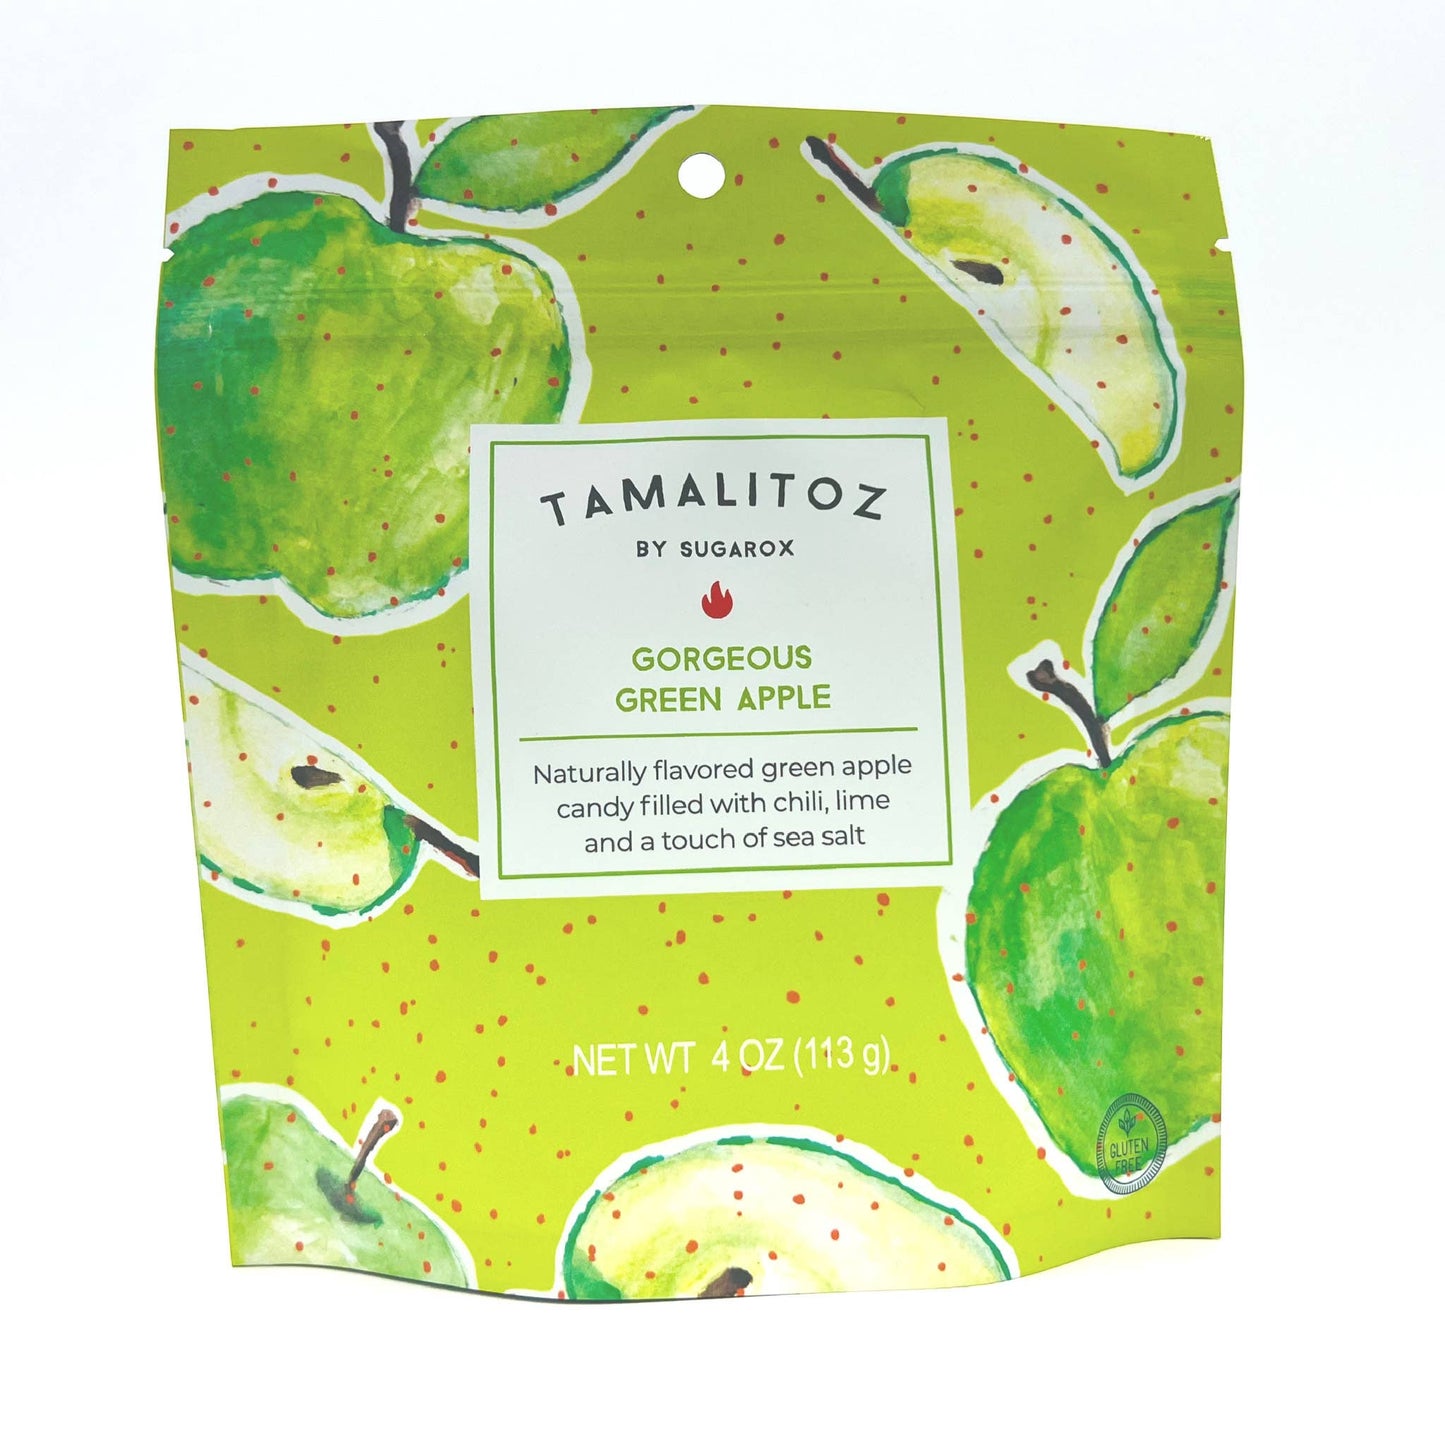 Gorgeous Green Apple Tamalitoz